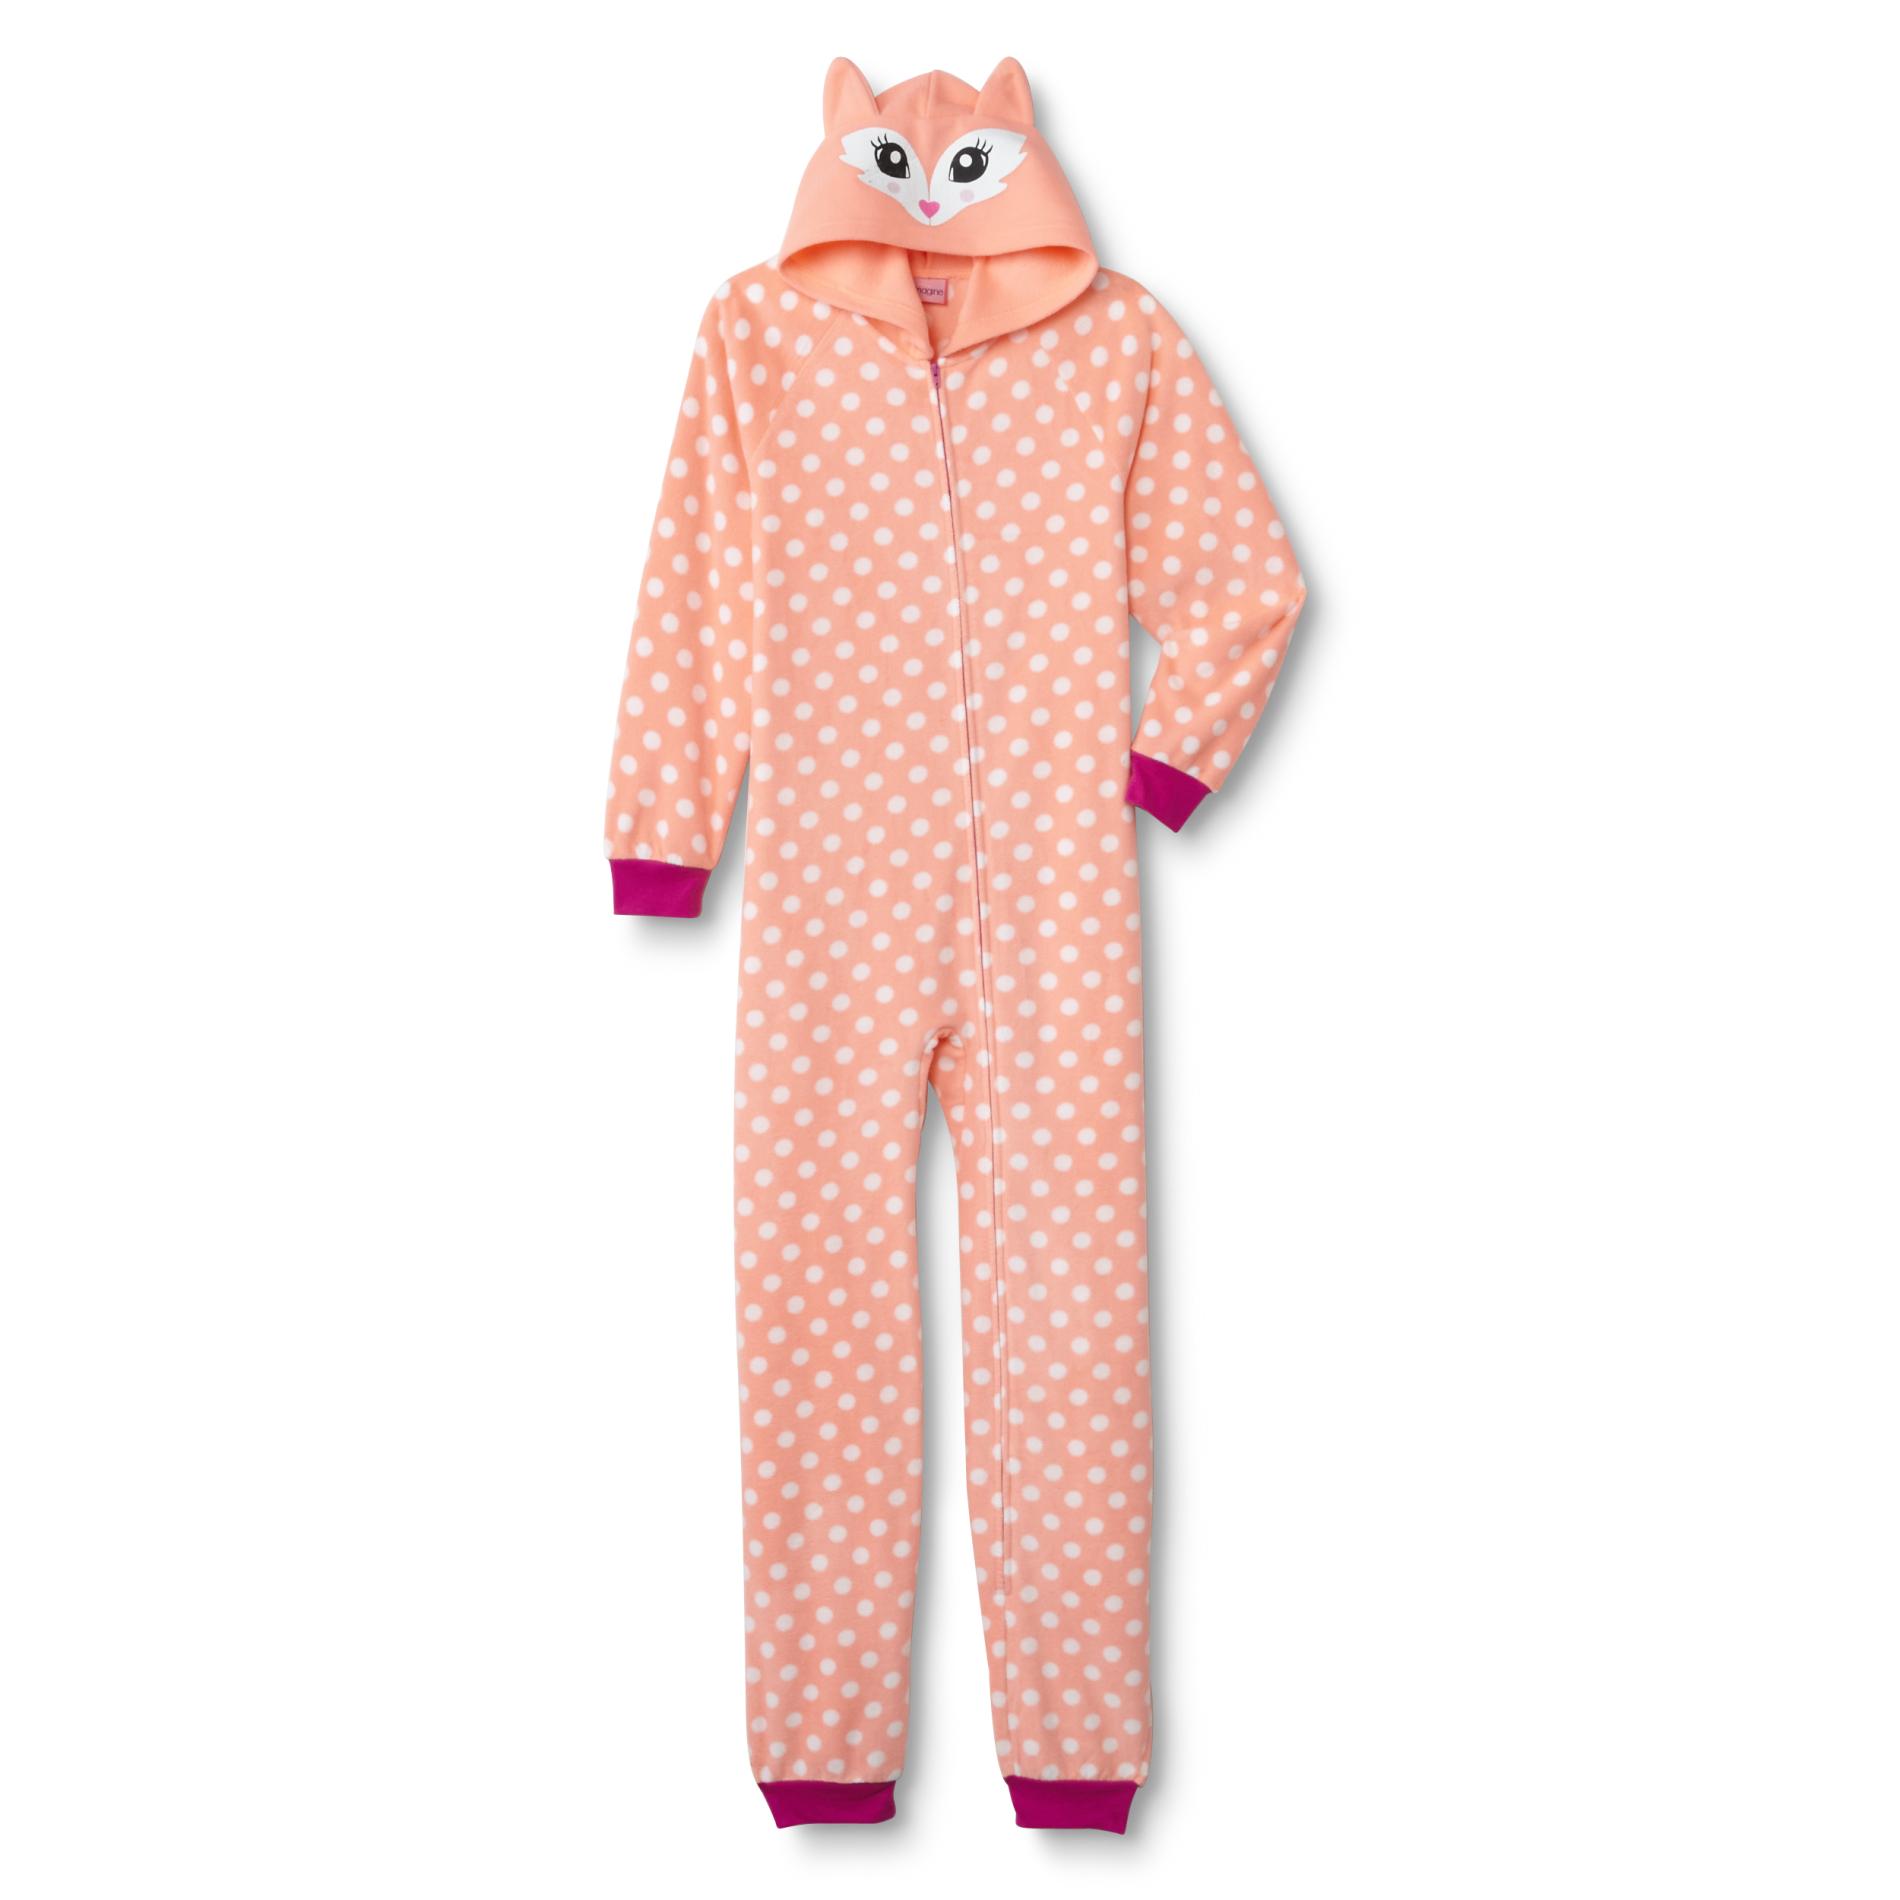 Joe Boxer Girls' Hooded Fleece Sleeper Pajamas - Polka Dots & Fox